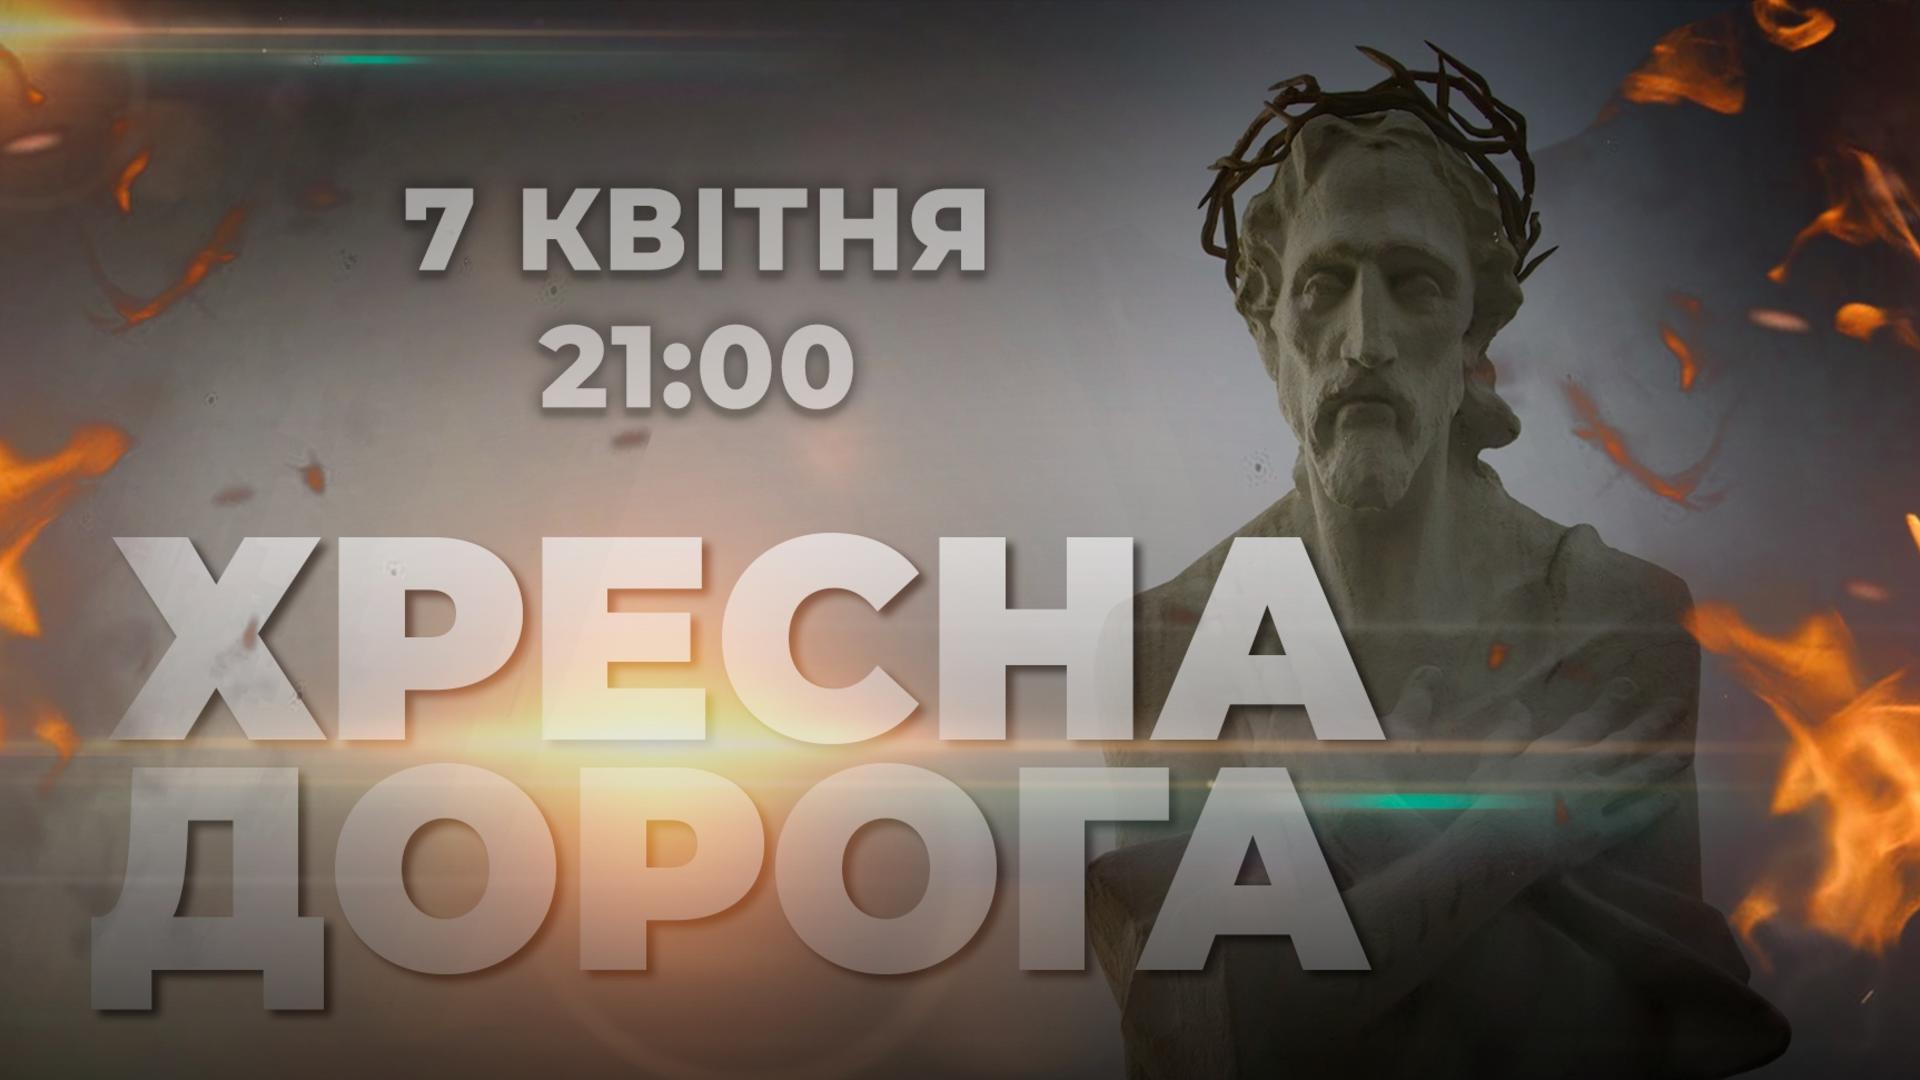 «Живе телебачення» запрошує пройти «Хресною дорогою України»